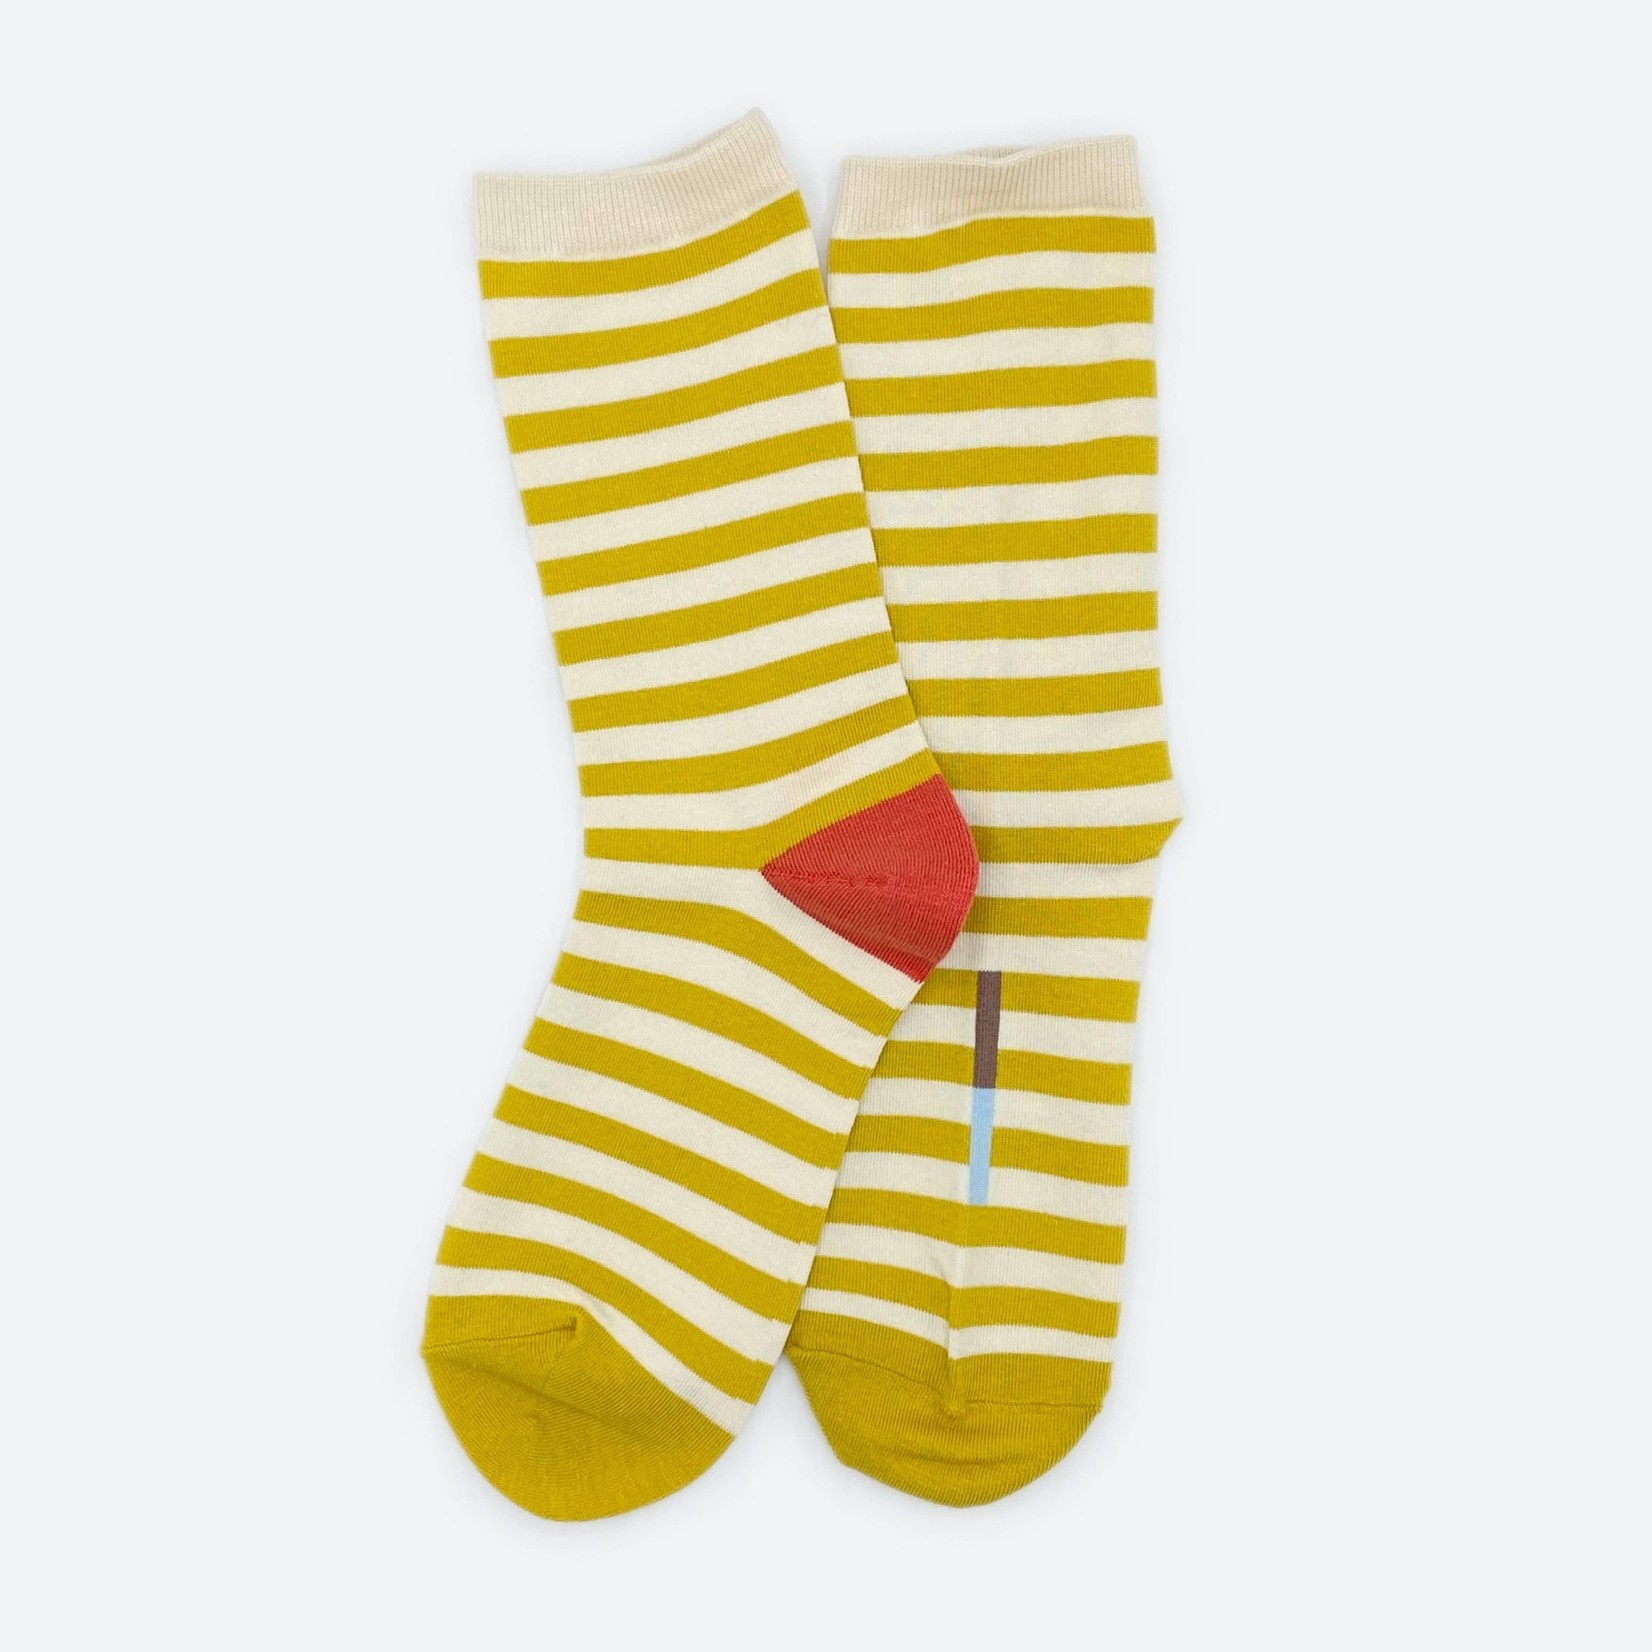 Eureka Socks | Large (Men’s – 8-12)